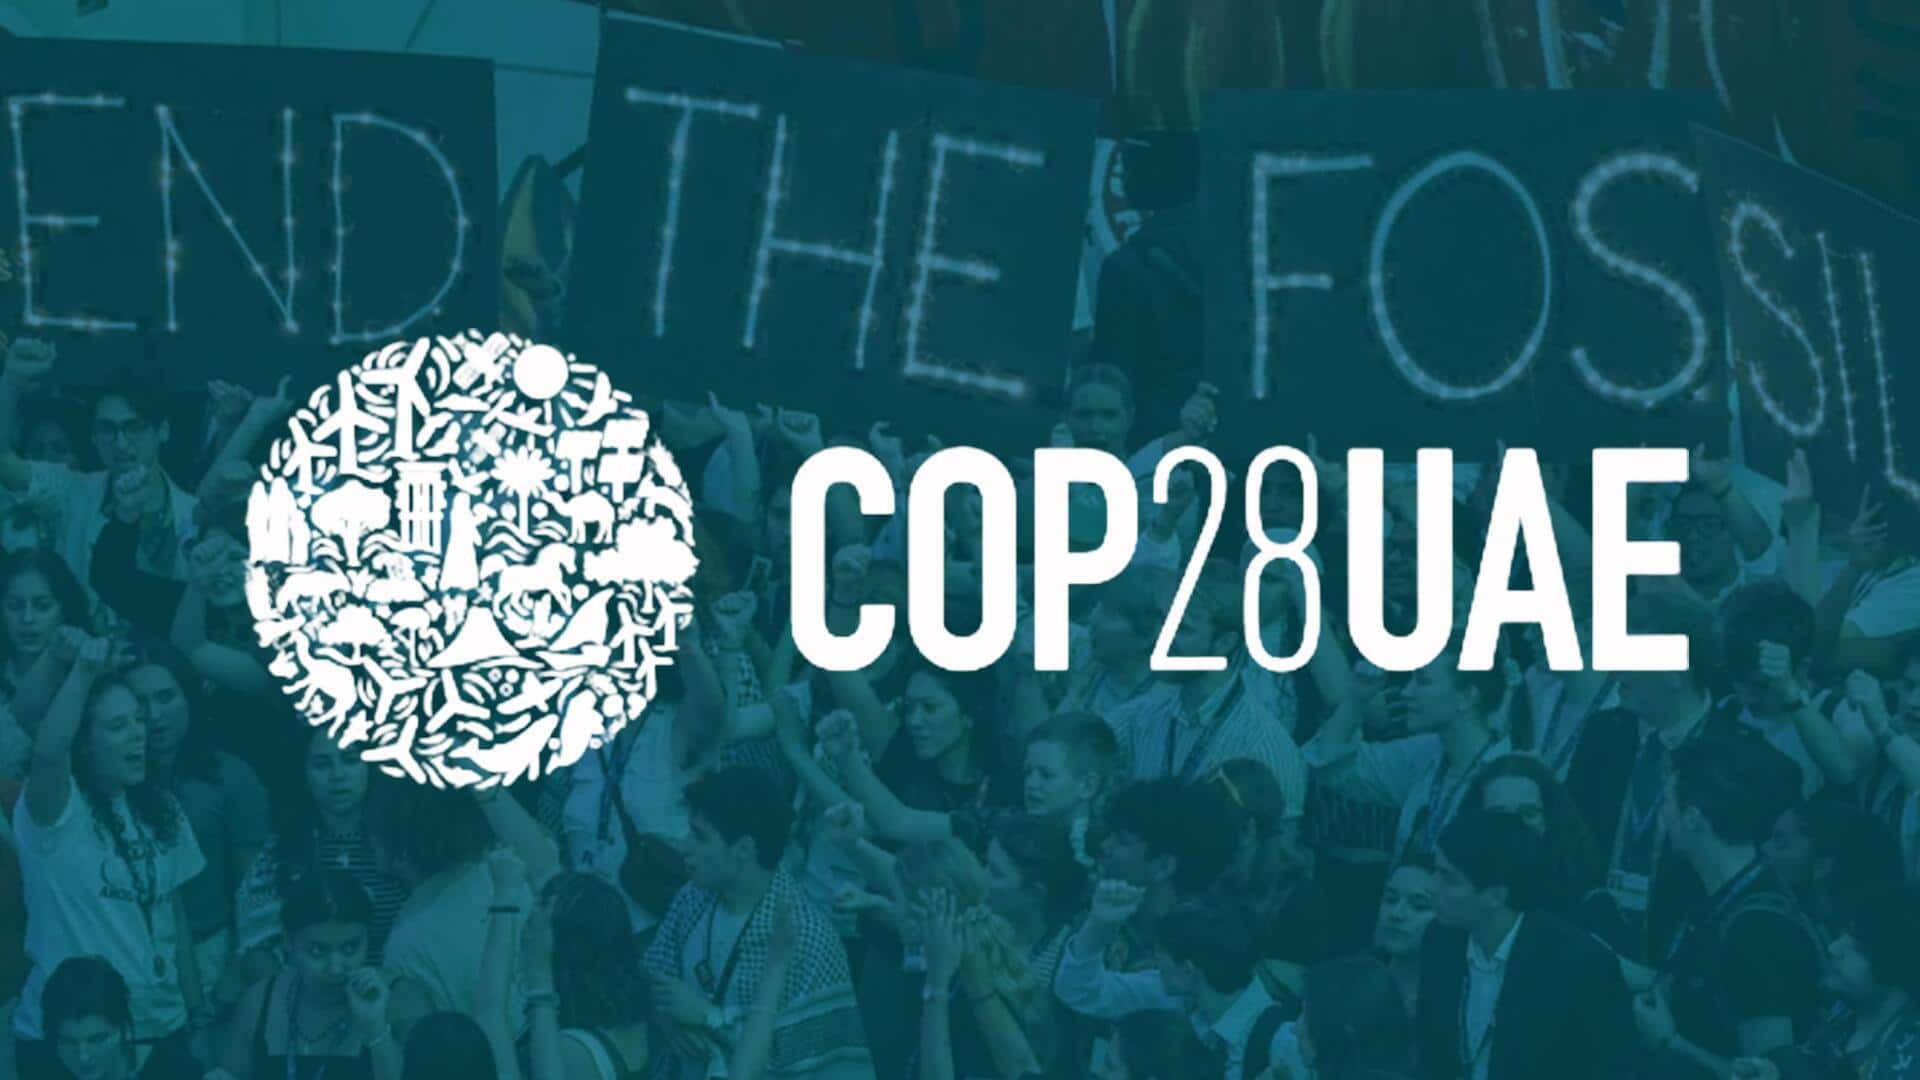 COP28 : जीवाश्म ईंधन की खपत कम करने के लिए हुआ ऐतिहासिक समझौता